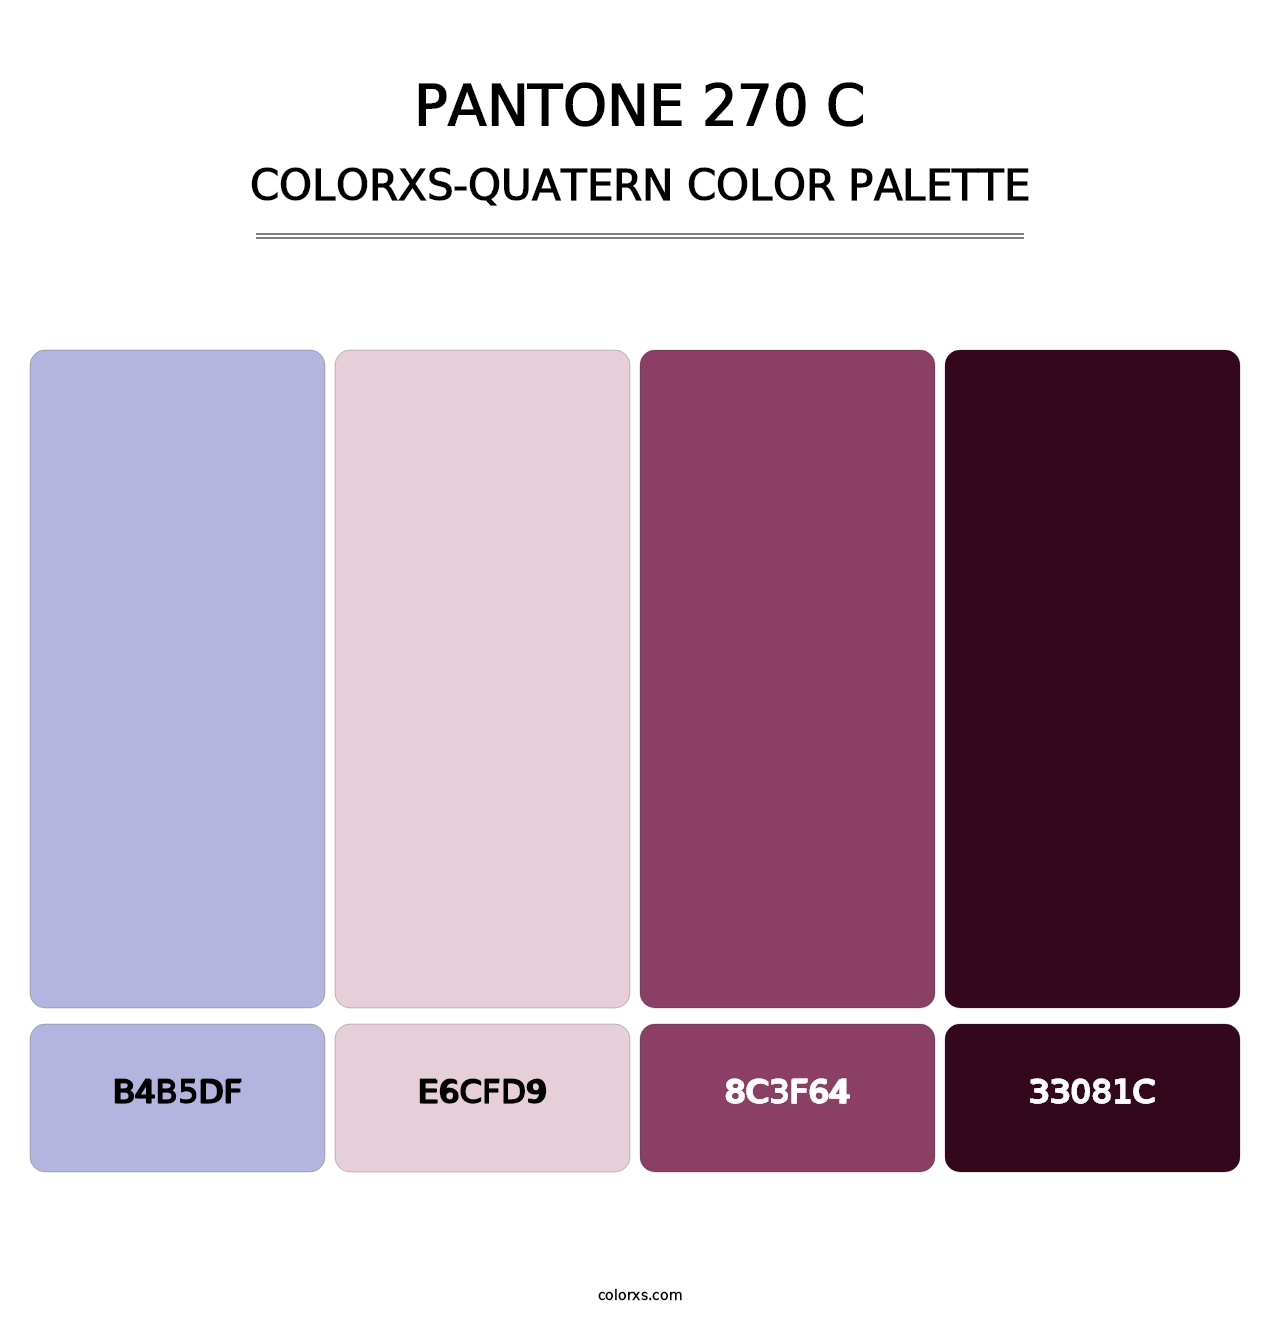 PANTONE 270 C - Colorxs Quatern Palette